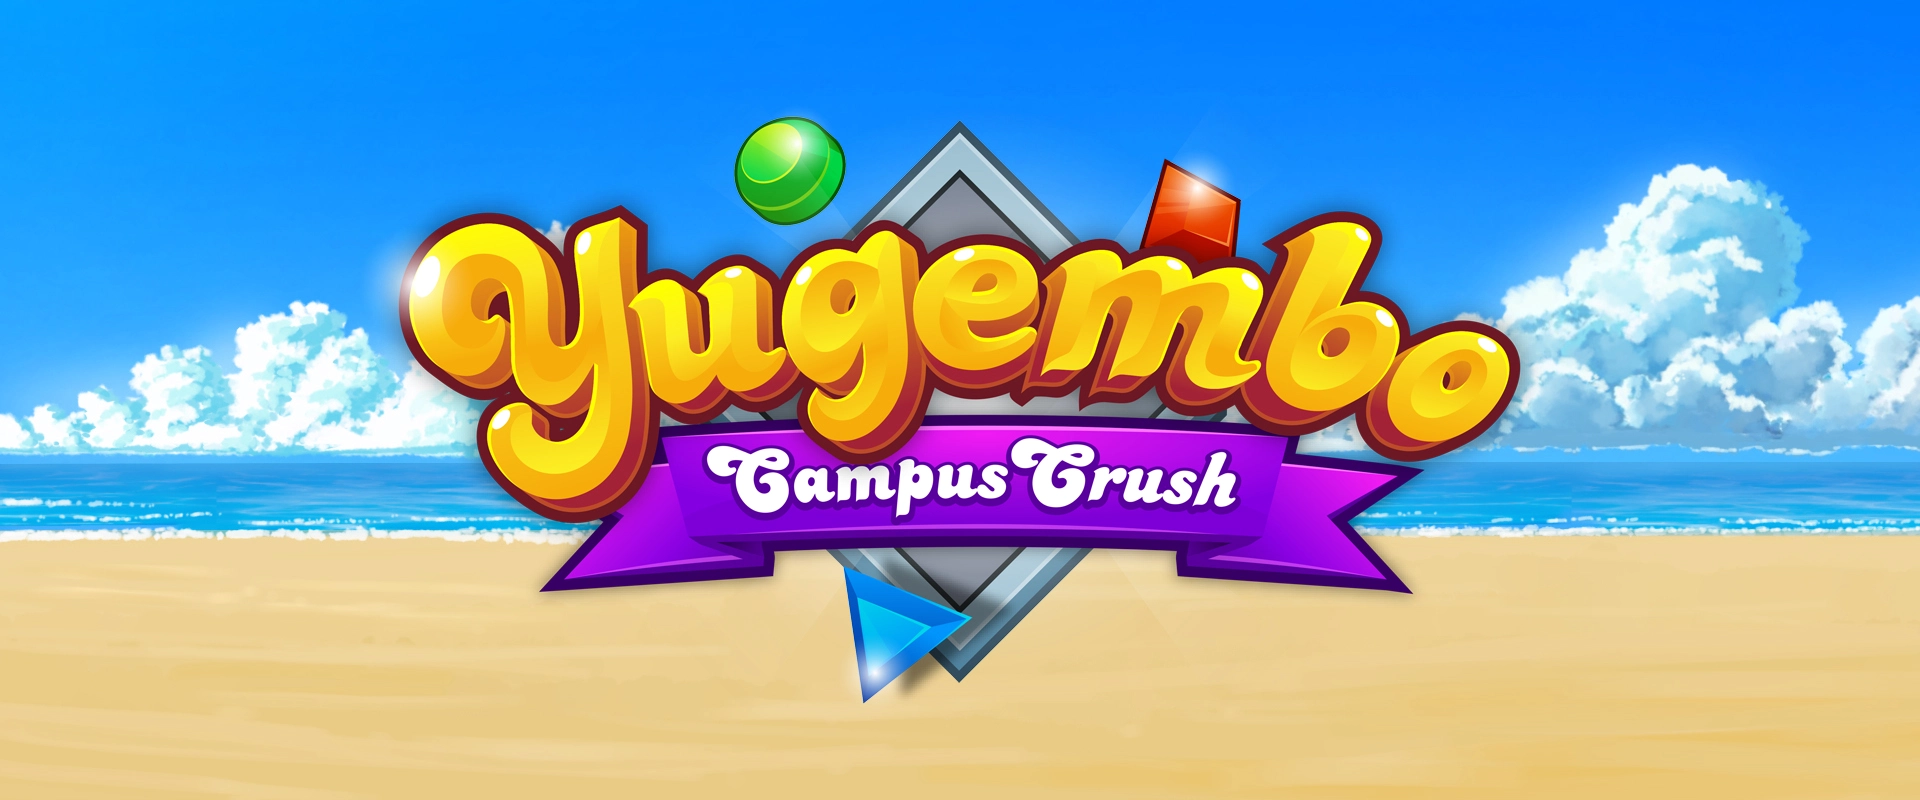 Yugembo: Campus Crush main image